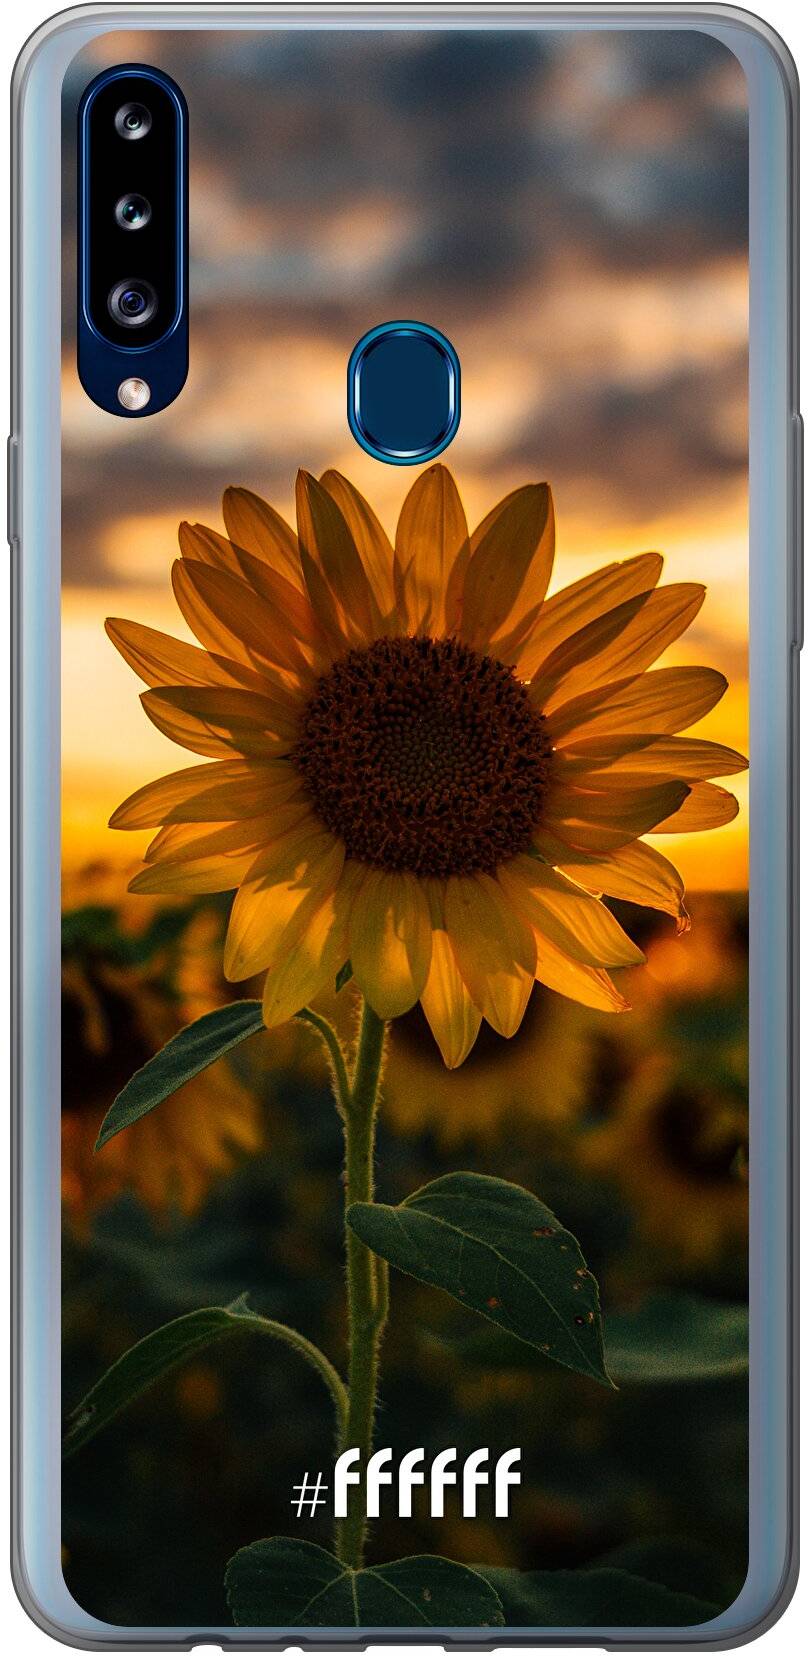 Sunset Sunflower Galaxy A20s